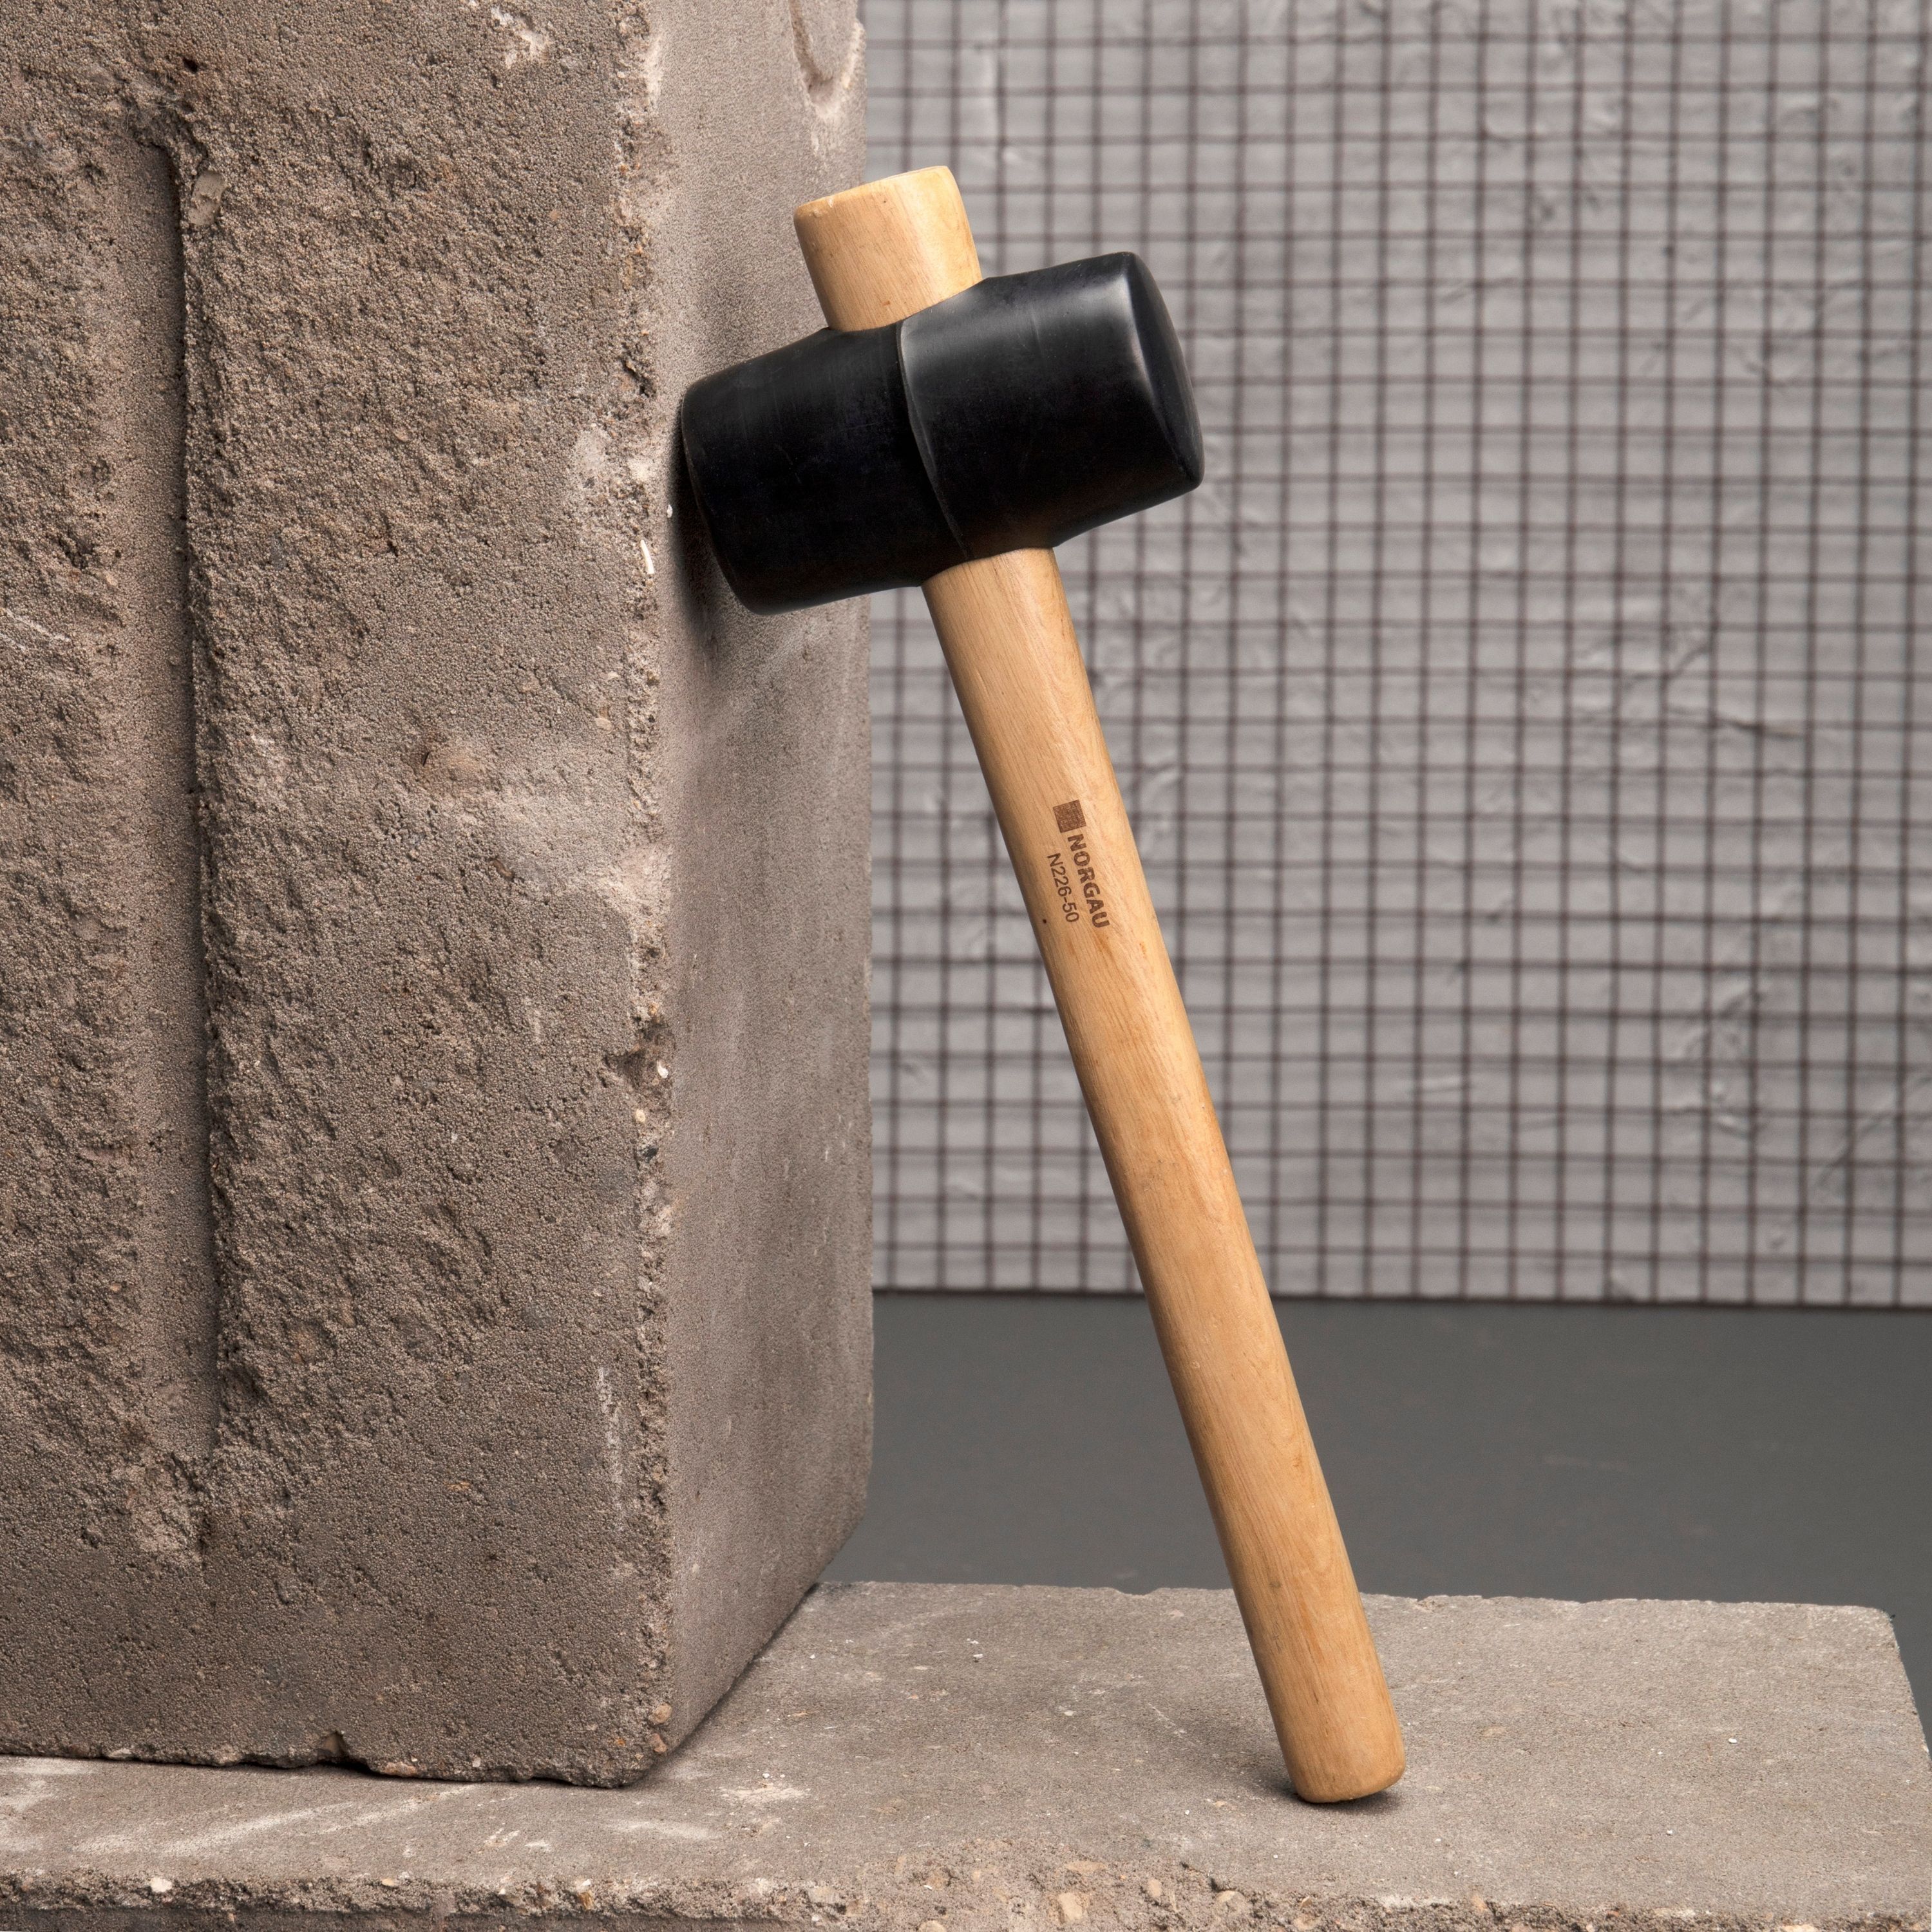 Резиновая киянка NORGAU Industrial с рукояткой из древесины гикори, диаметр бойка 50 мм столярный молоток с деревянной рукояткой 300 г top tools 02a203